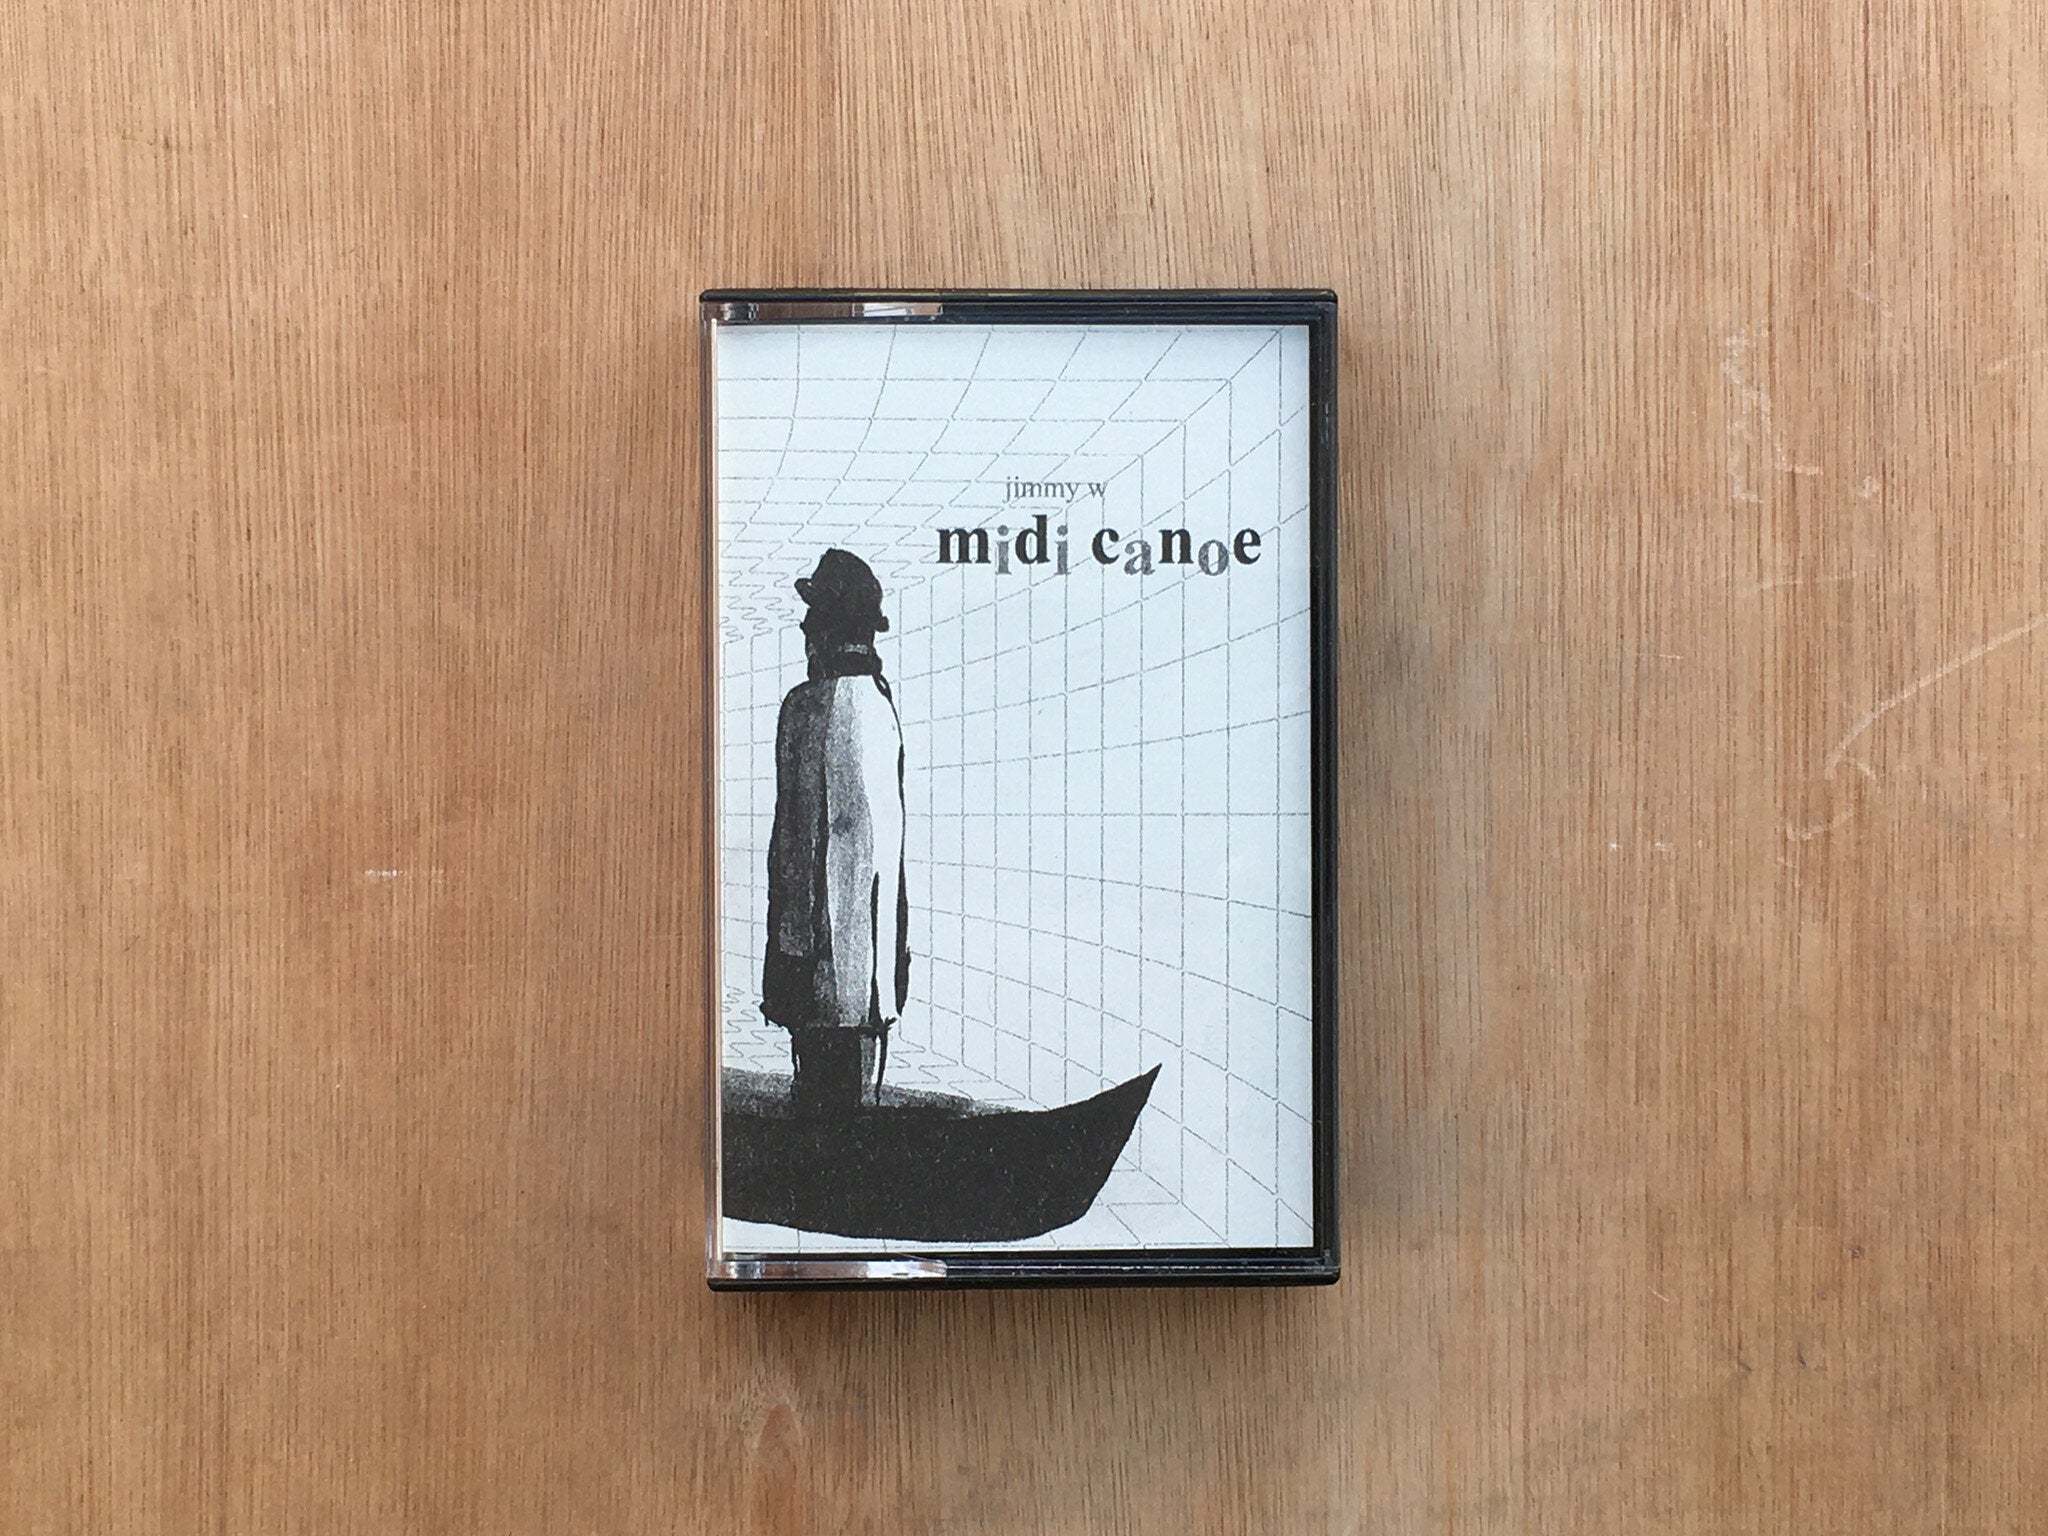 MIDI CANOE by Jimmy W